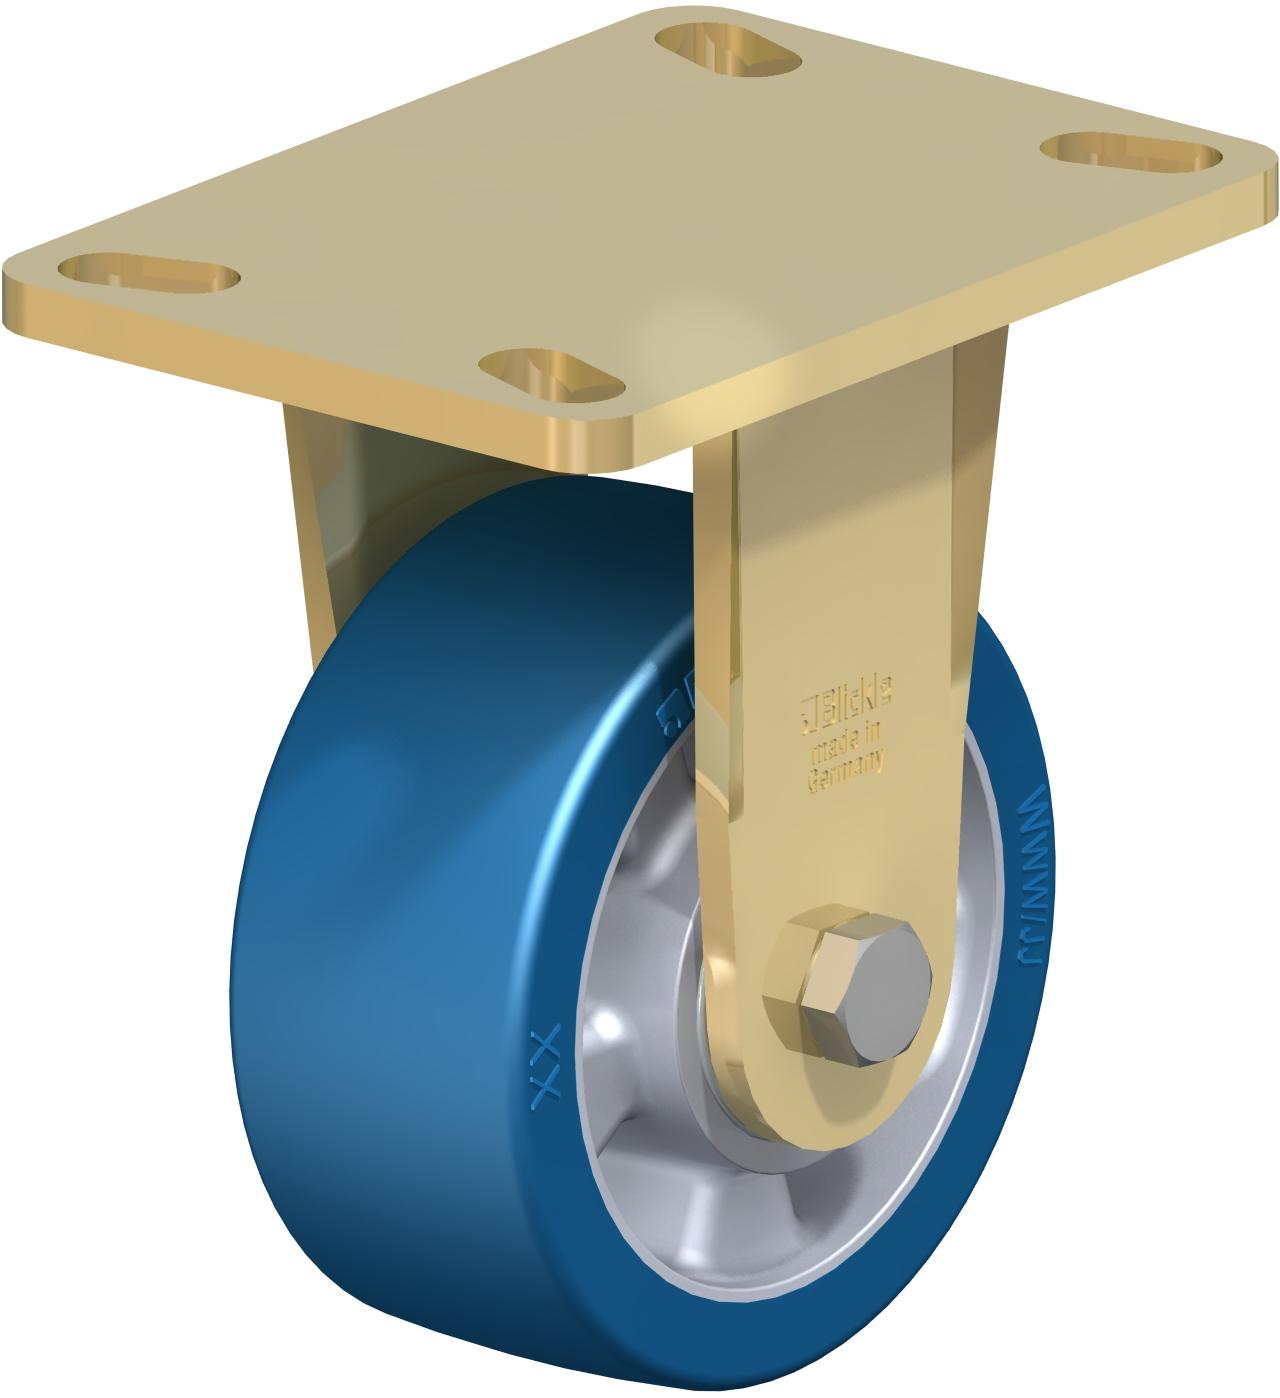 額外重值頂板選手-硬化,球軸承,BlickleBesthane藍聚氨酯軌跡鋁核心輪